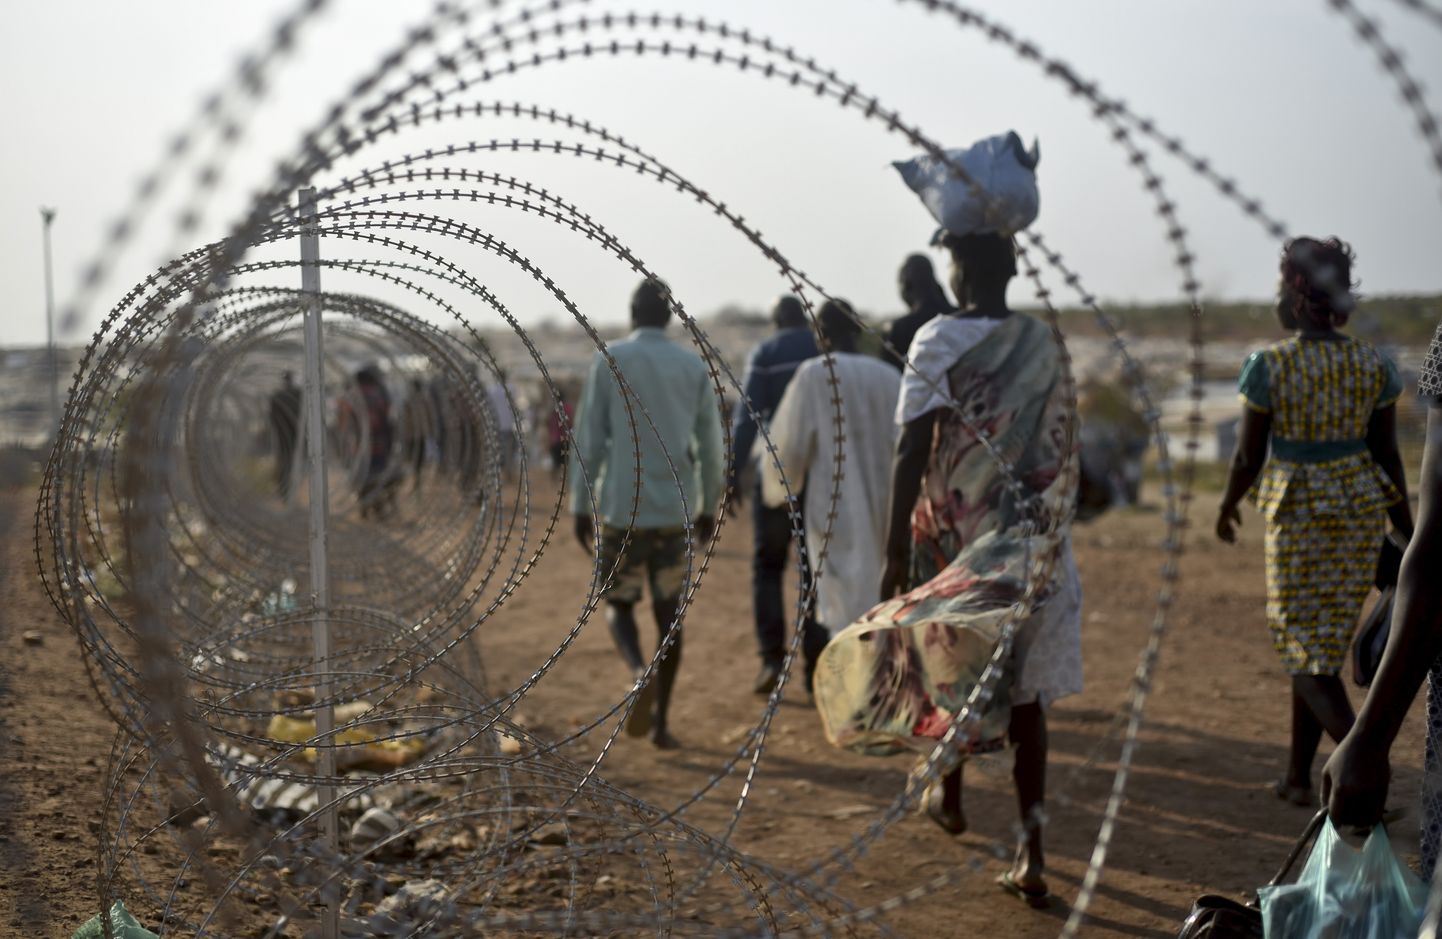 Sisepõgenikud kõndimas ÜRO baasi okastraataia ääres Lõuna-Sudaani pealinnas Jubas. Kodusõja ajal kasutasid valitsusväed vägistamist laialdaselt sõjarelvana, piinataes ohvreid vahel tundide või päevade kaupa. Vägistamistelaine pole järele andnud ka pärast rahu sõlmimist riigis.